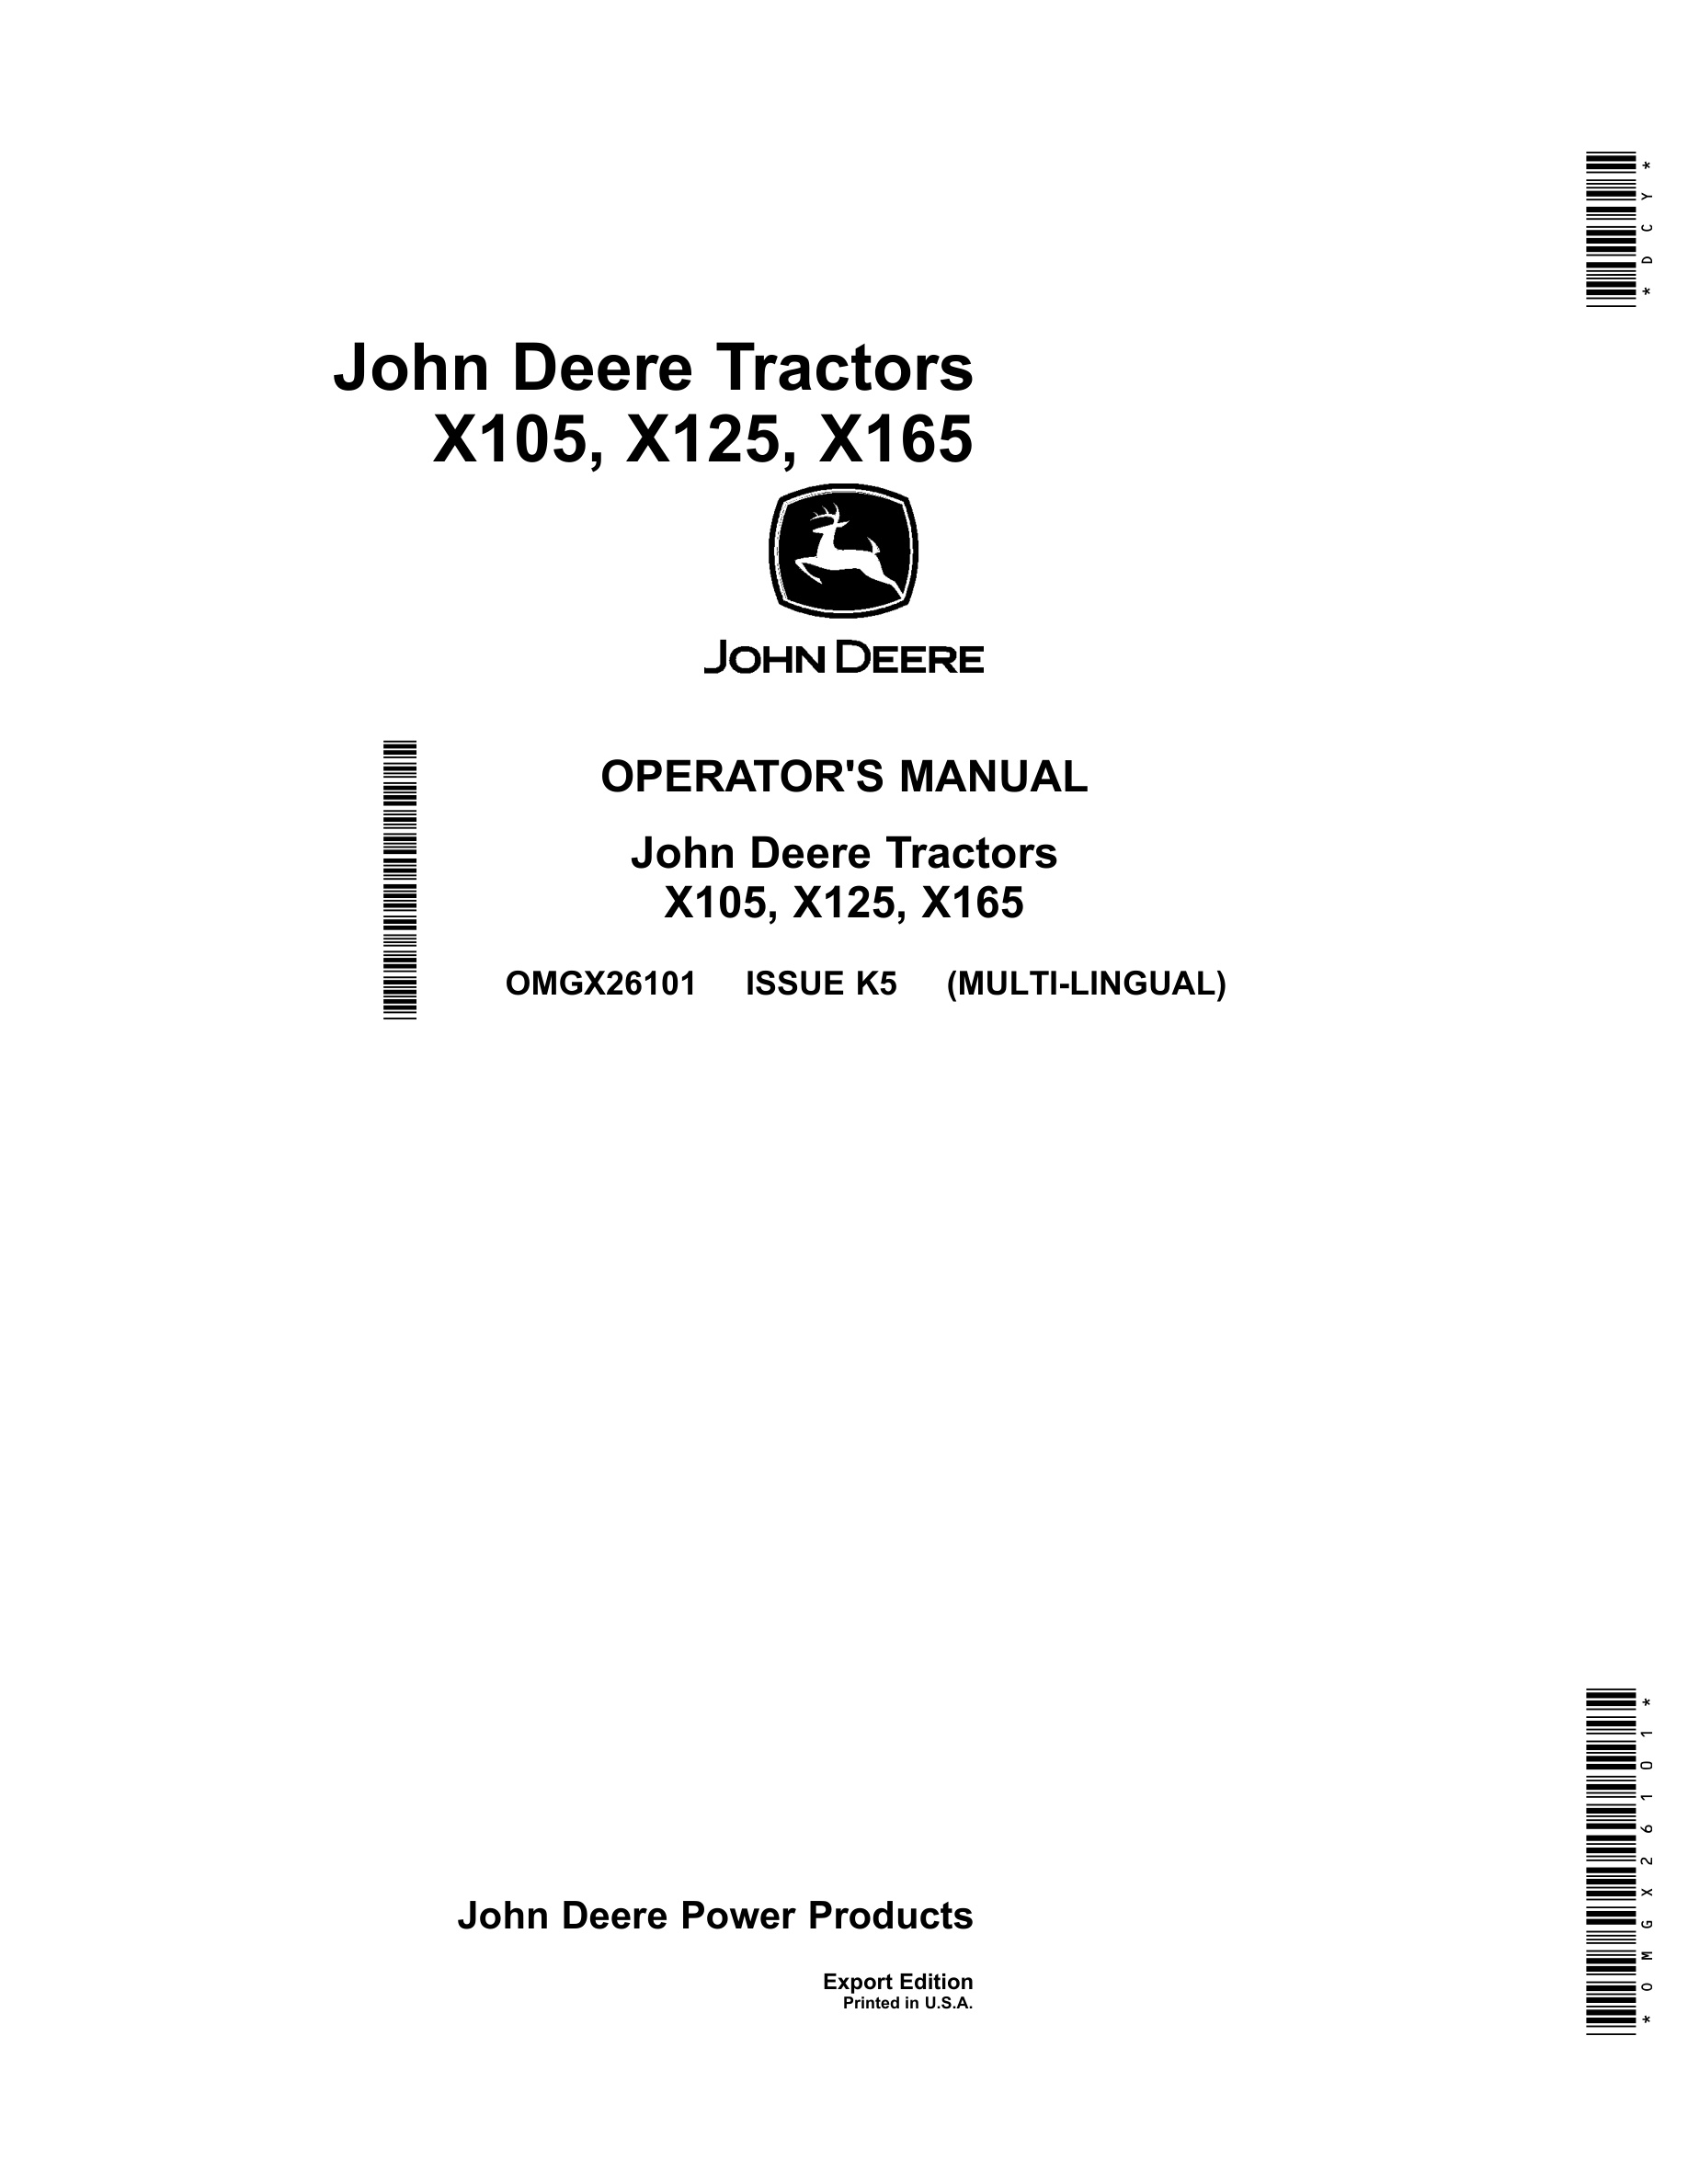 John Deere X105, X125, X165 Tractors Operator Manuals OMGX26101-1